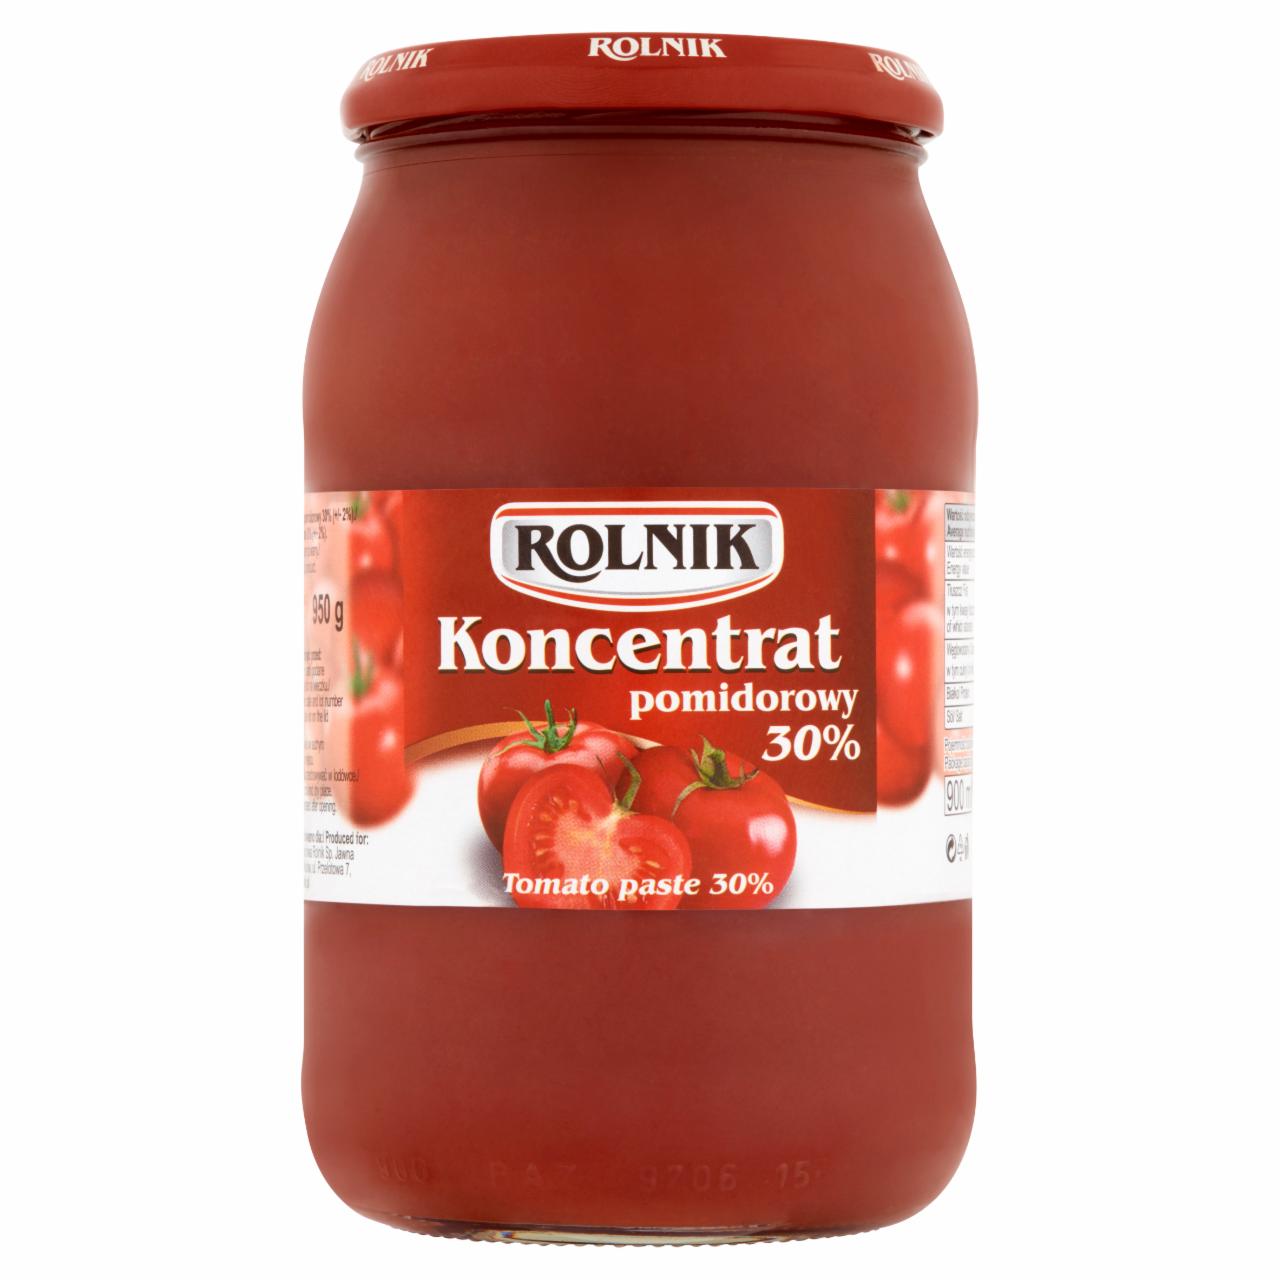 Zdjęcia - Rolnik Koncentrat pomidorowy 30% 950 g